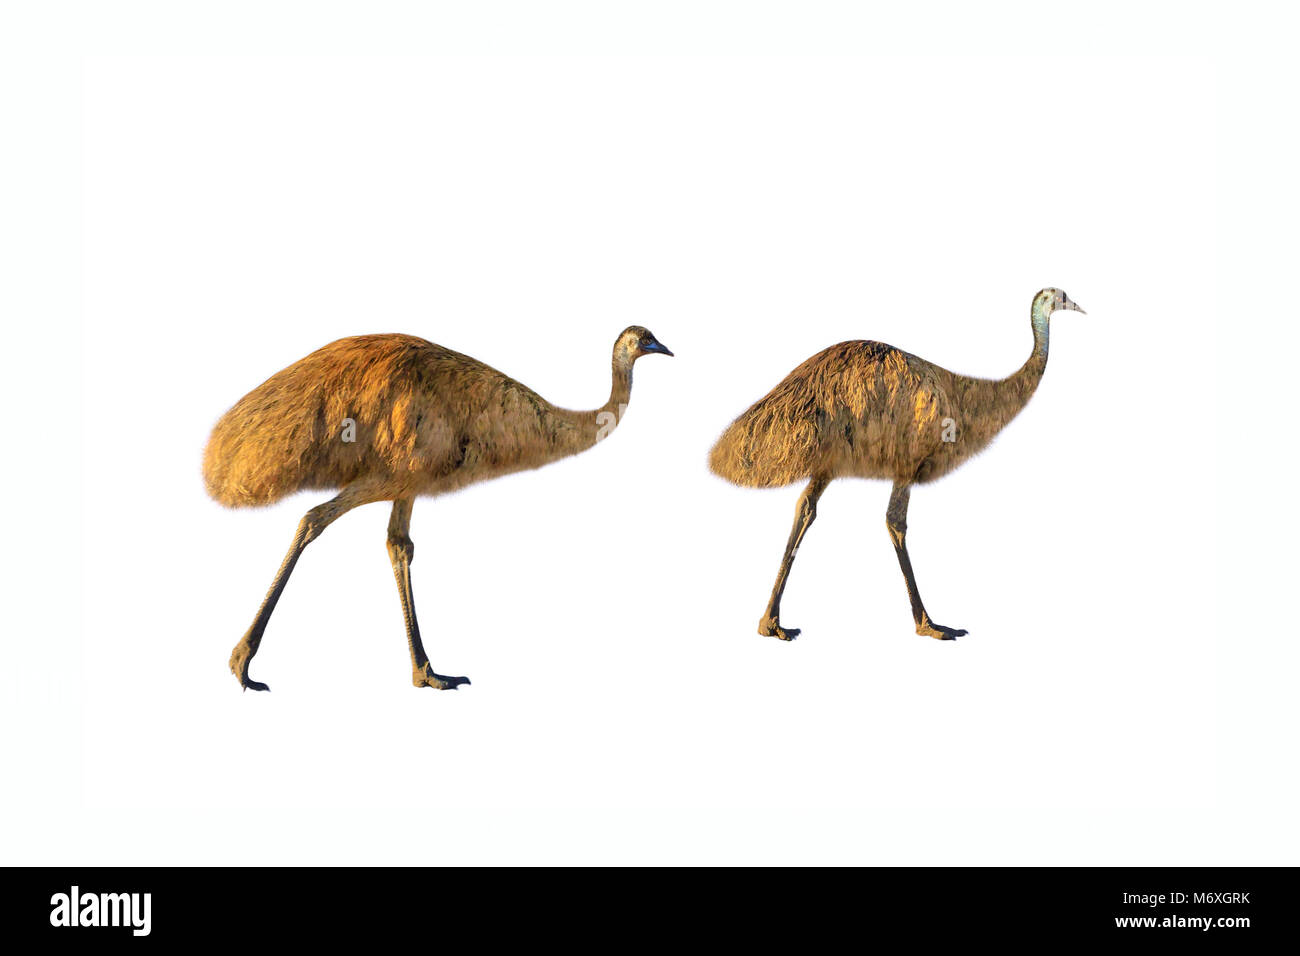 Due emu, Dromaius novaehollandiae, passeggiate, isolati su sfondo bianco.L'EMU è il simbolico uccello nazionale dell'Australia. Essa vive nelle praterie e savane dell intero territorio australiano. Vista laterale Foto Stock